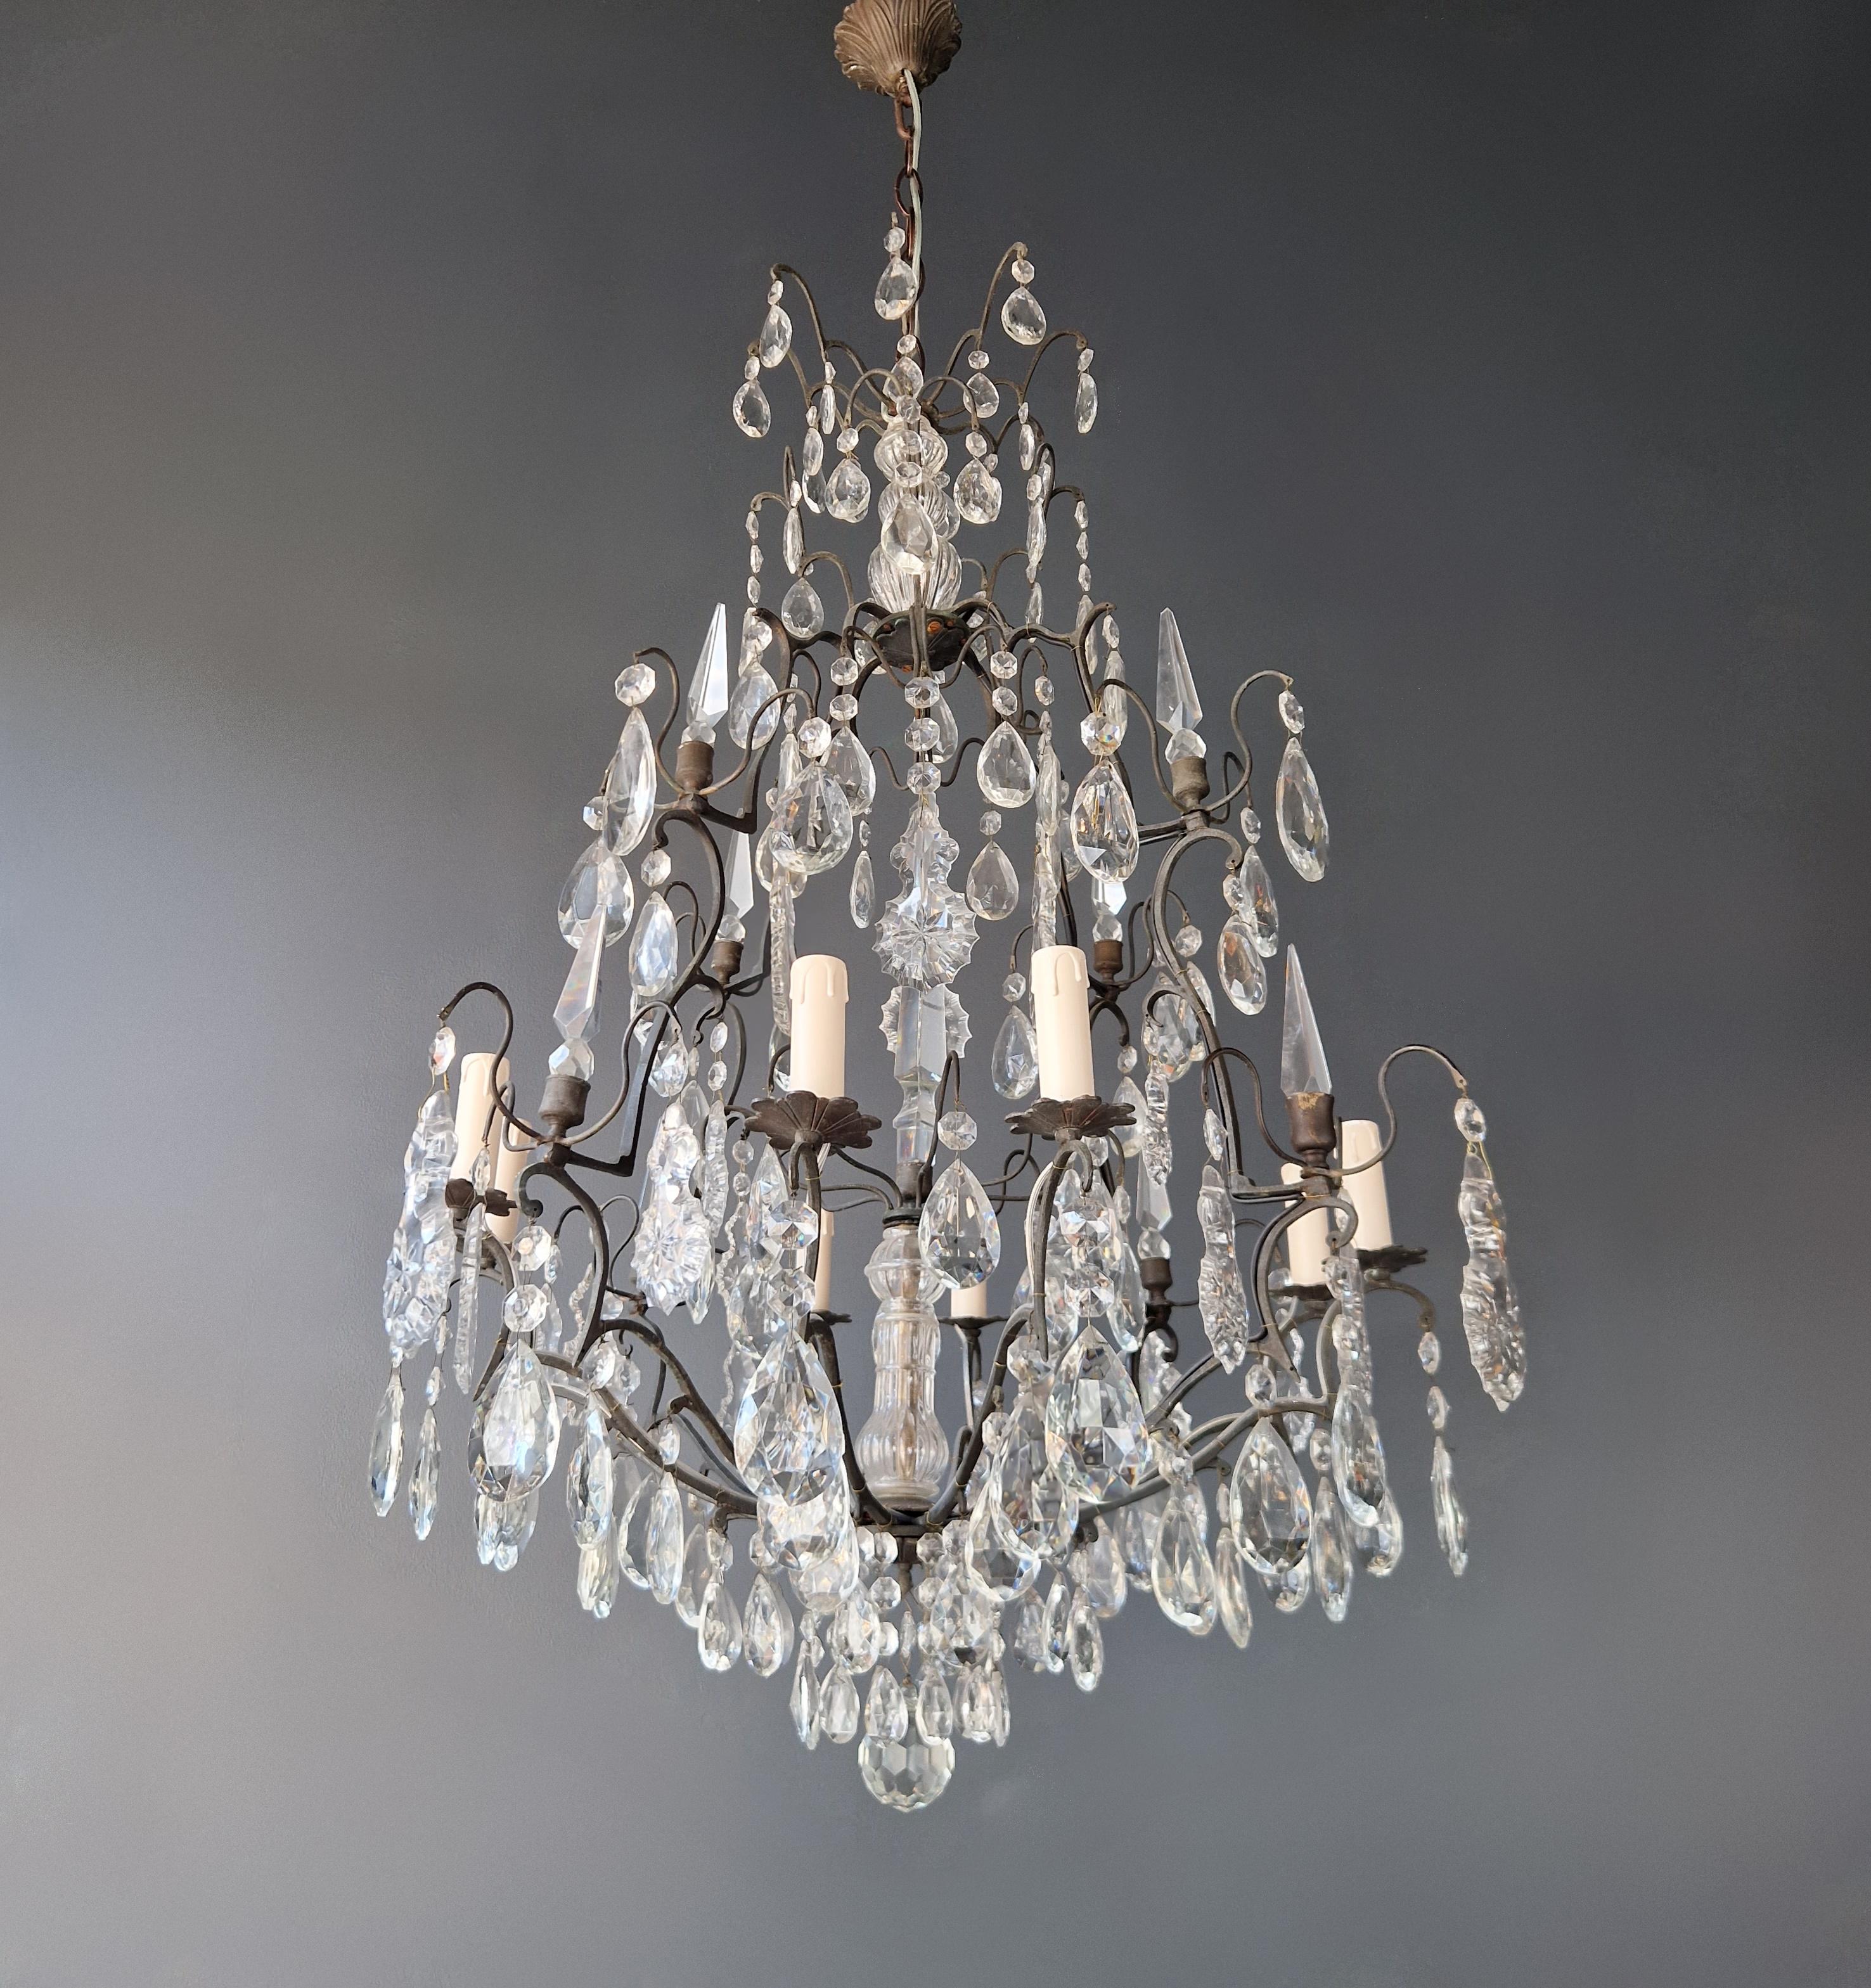 Baroque Antique French Crystal Chandelier Ceiling Lamp Lustre Art Nouveau Lamp